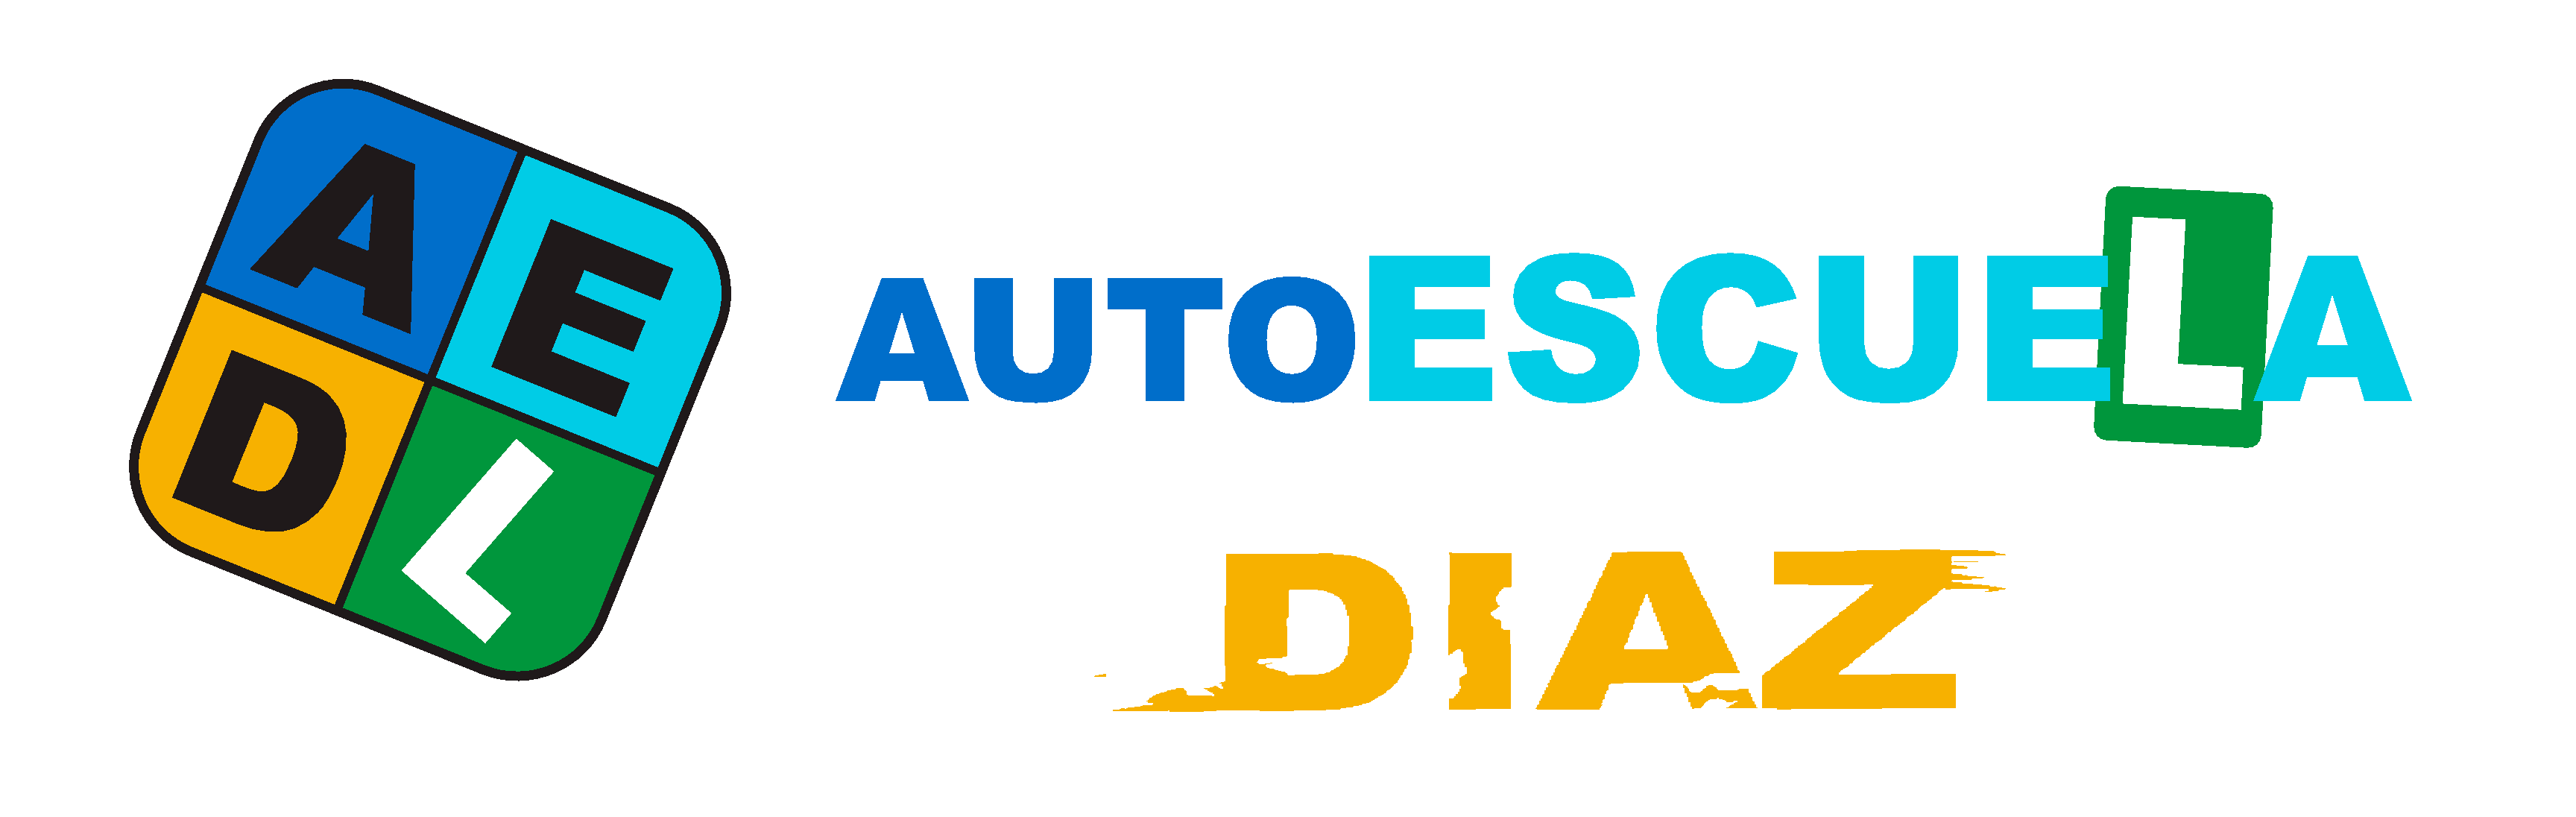 Autoescuela Diaz